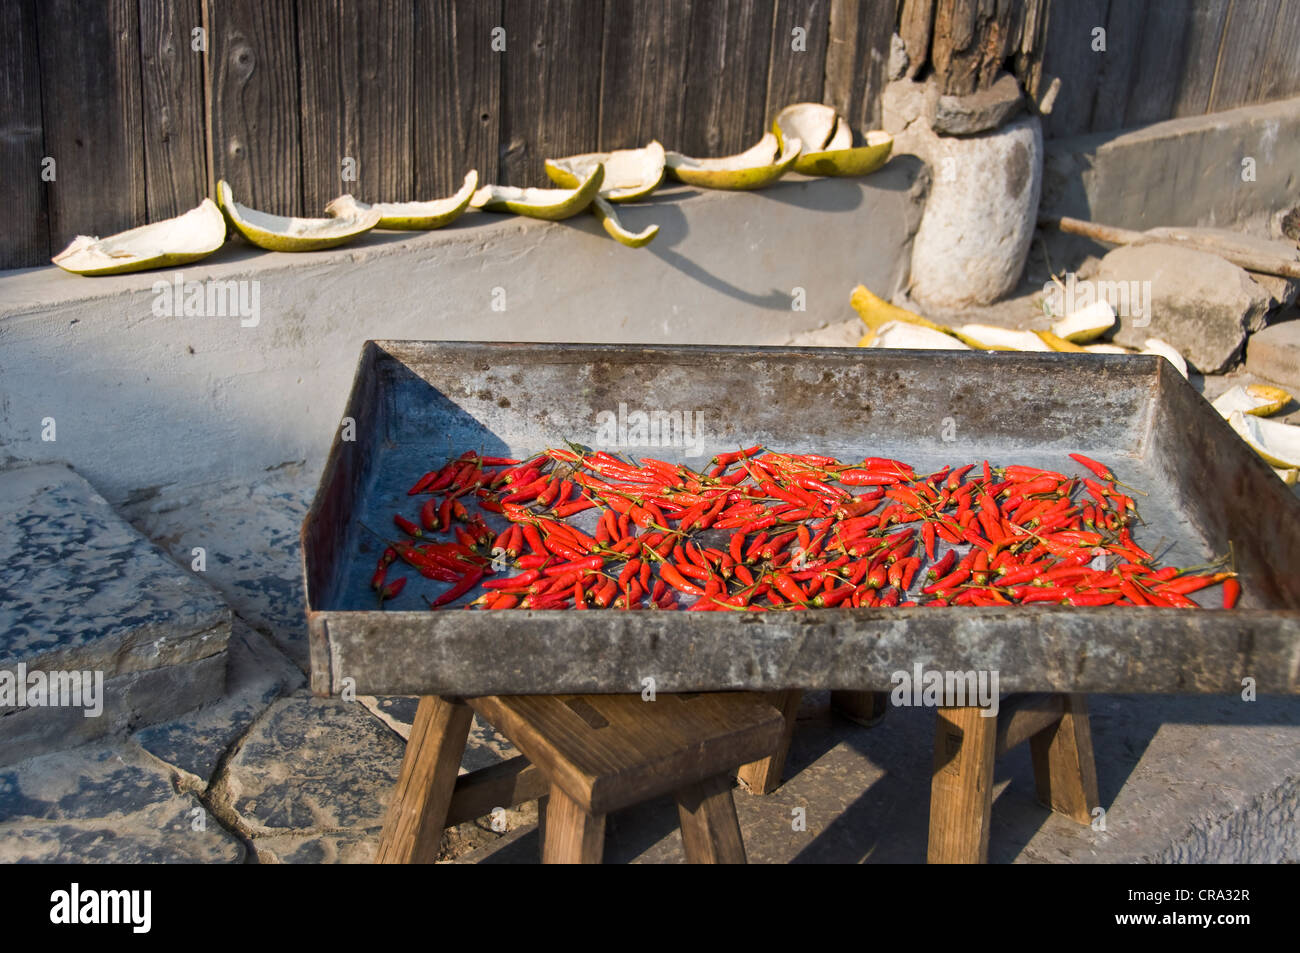 Rote Chilis trocknen in der Sonne - Dazhai Village, Provinz Shanxi, China Stockfoto